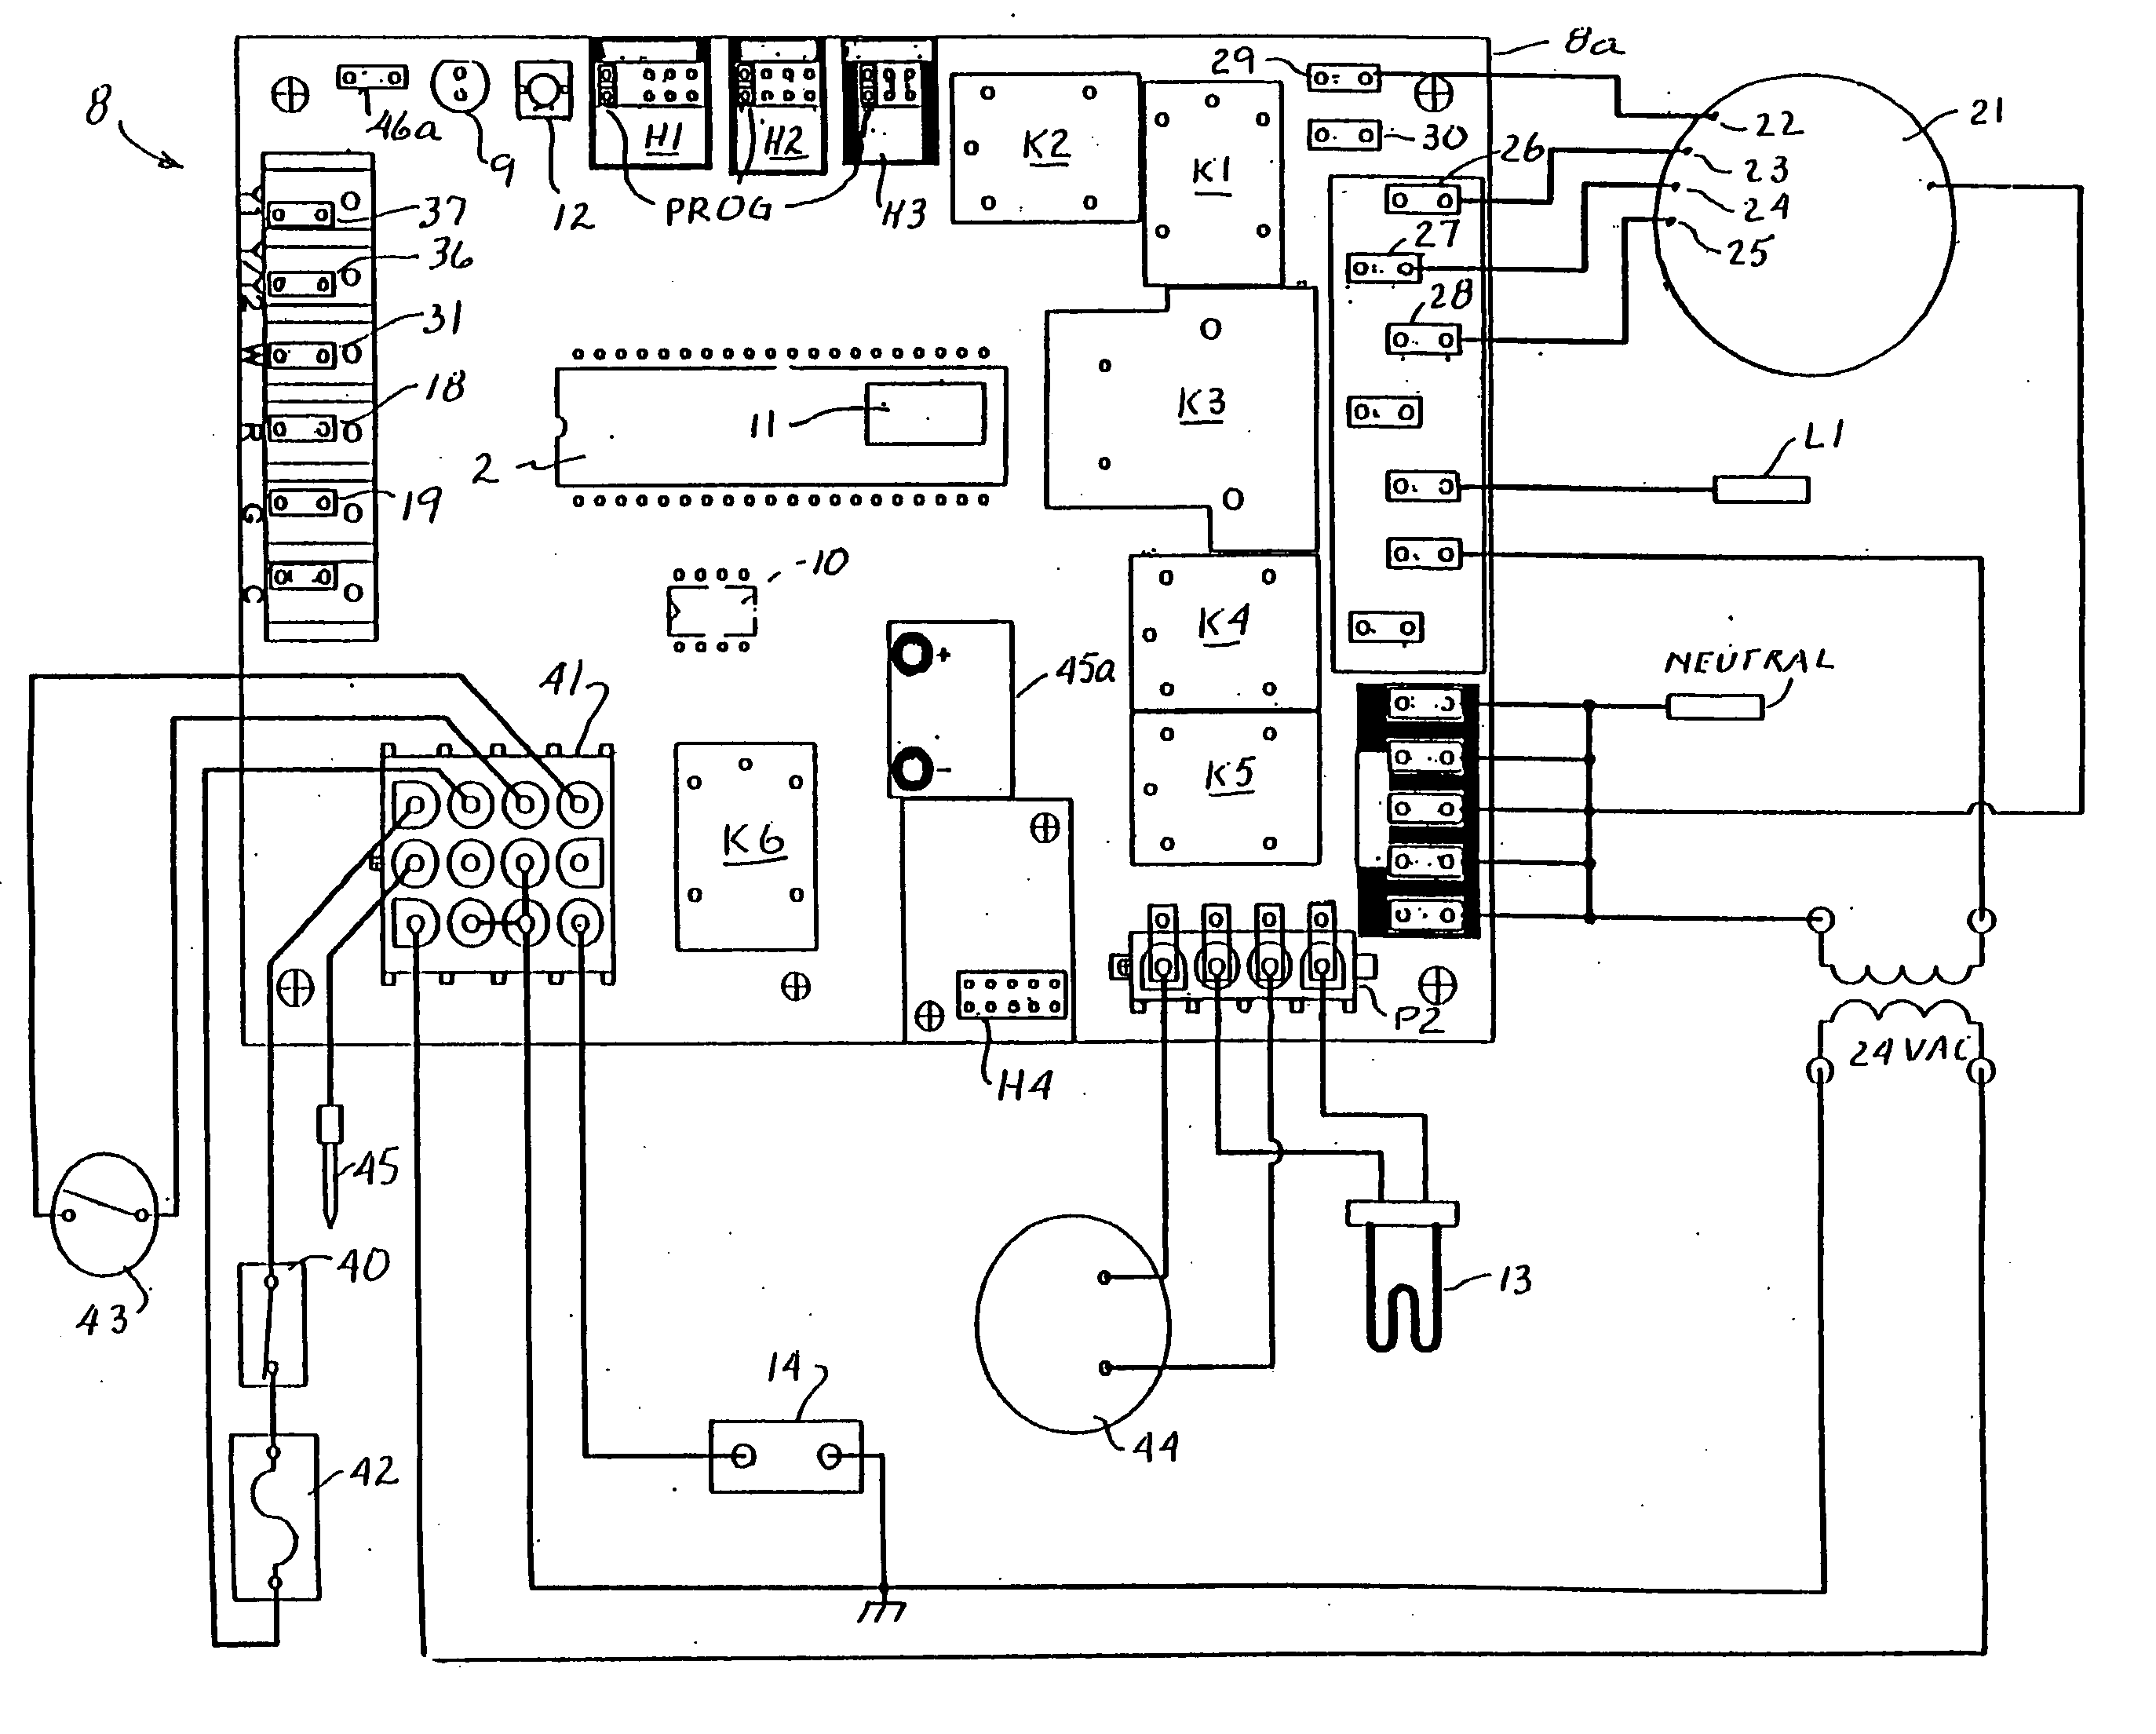 samsung ftq353iwux control board wiring diagram